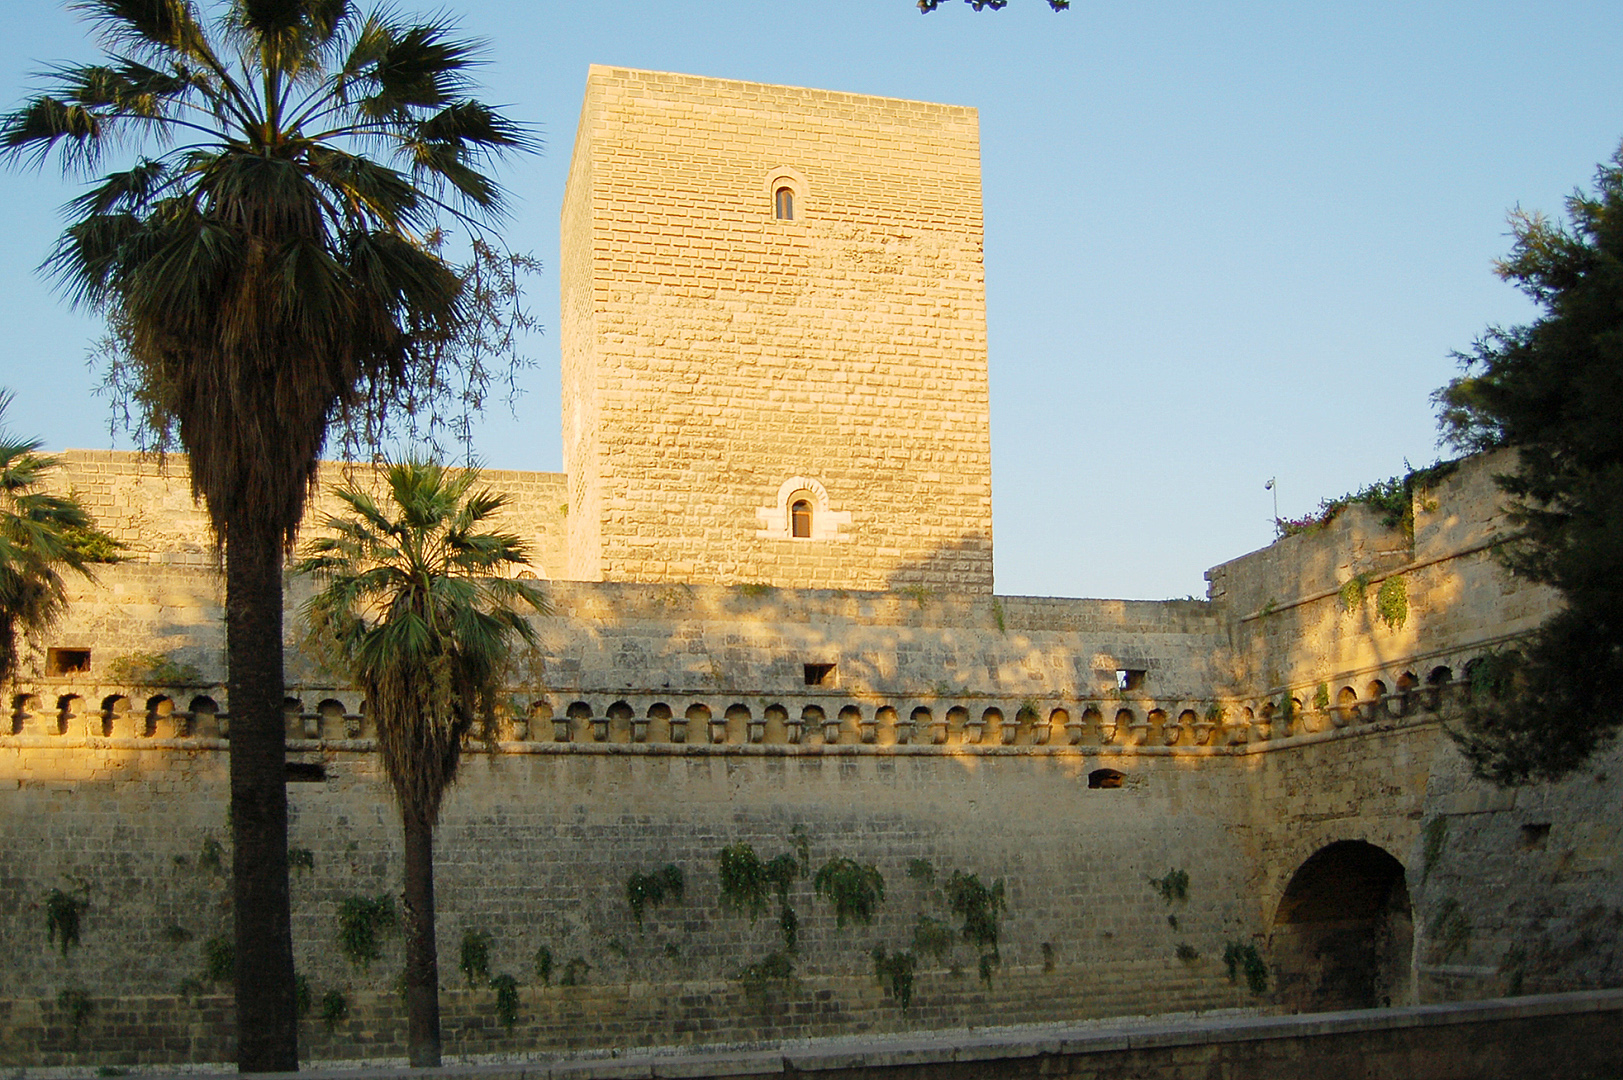 Kasteel van Bari (Apuli, Itali); Bari Castle (Apulia, Italy)